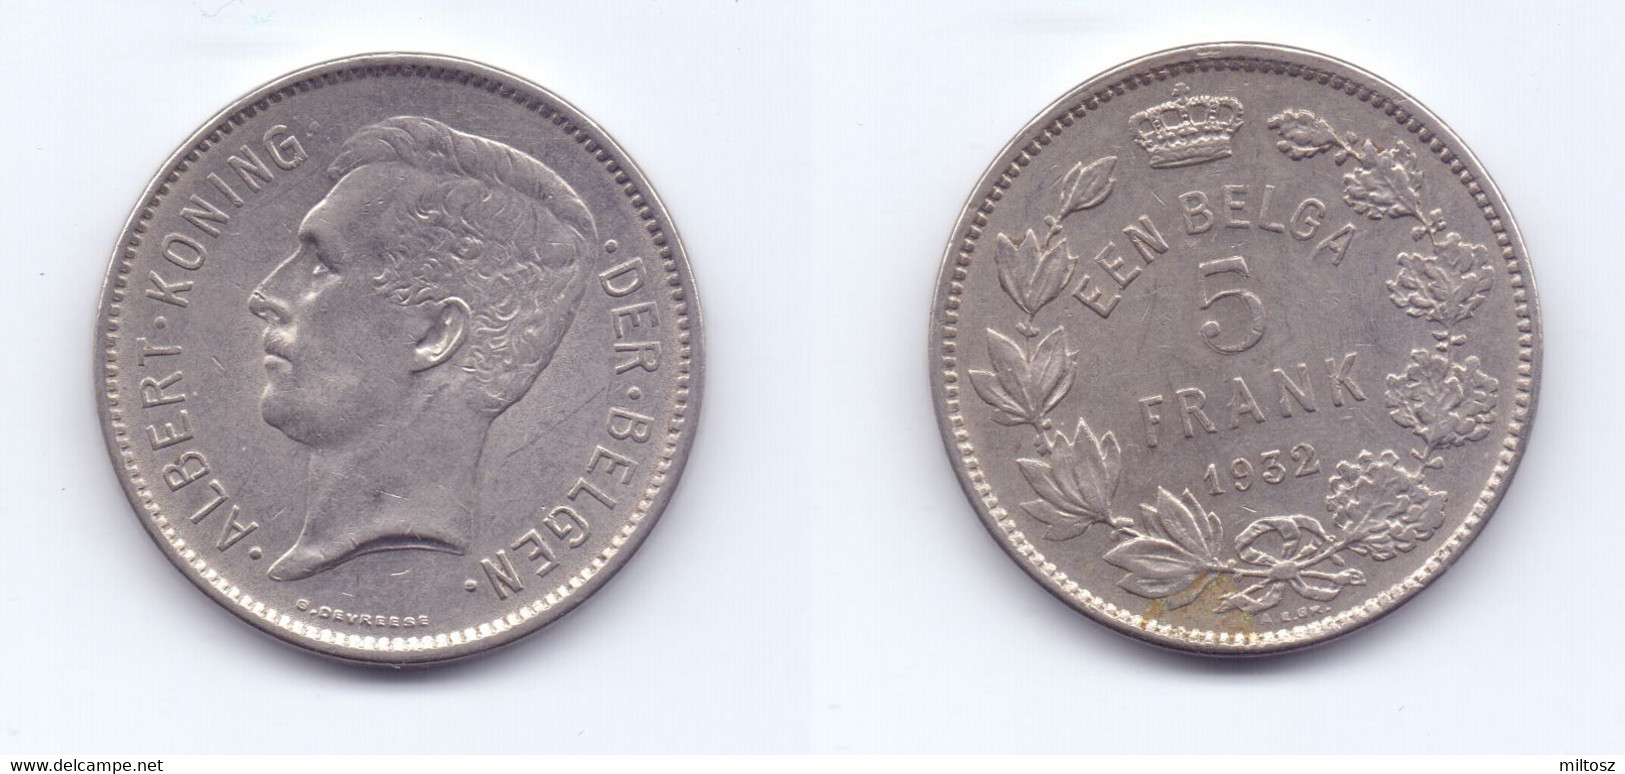 Belgium 5 Francs 1932 (legend In Dutch) Pos. B - 5 Frank & 1 Belga